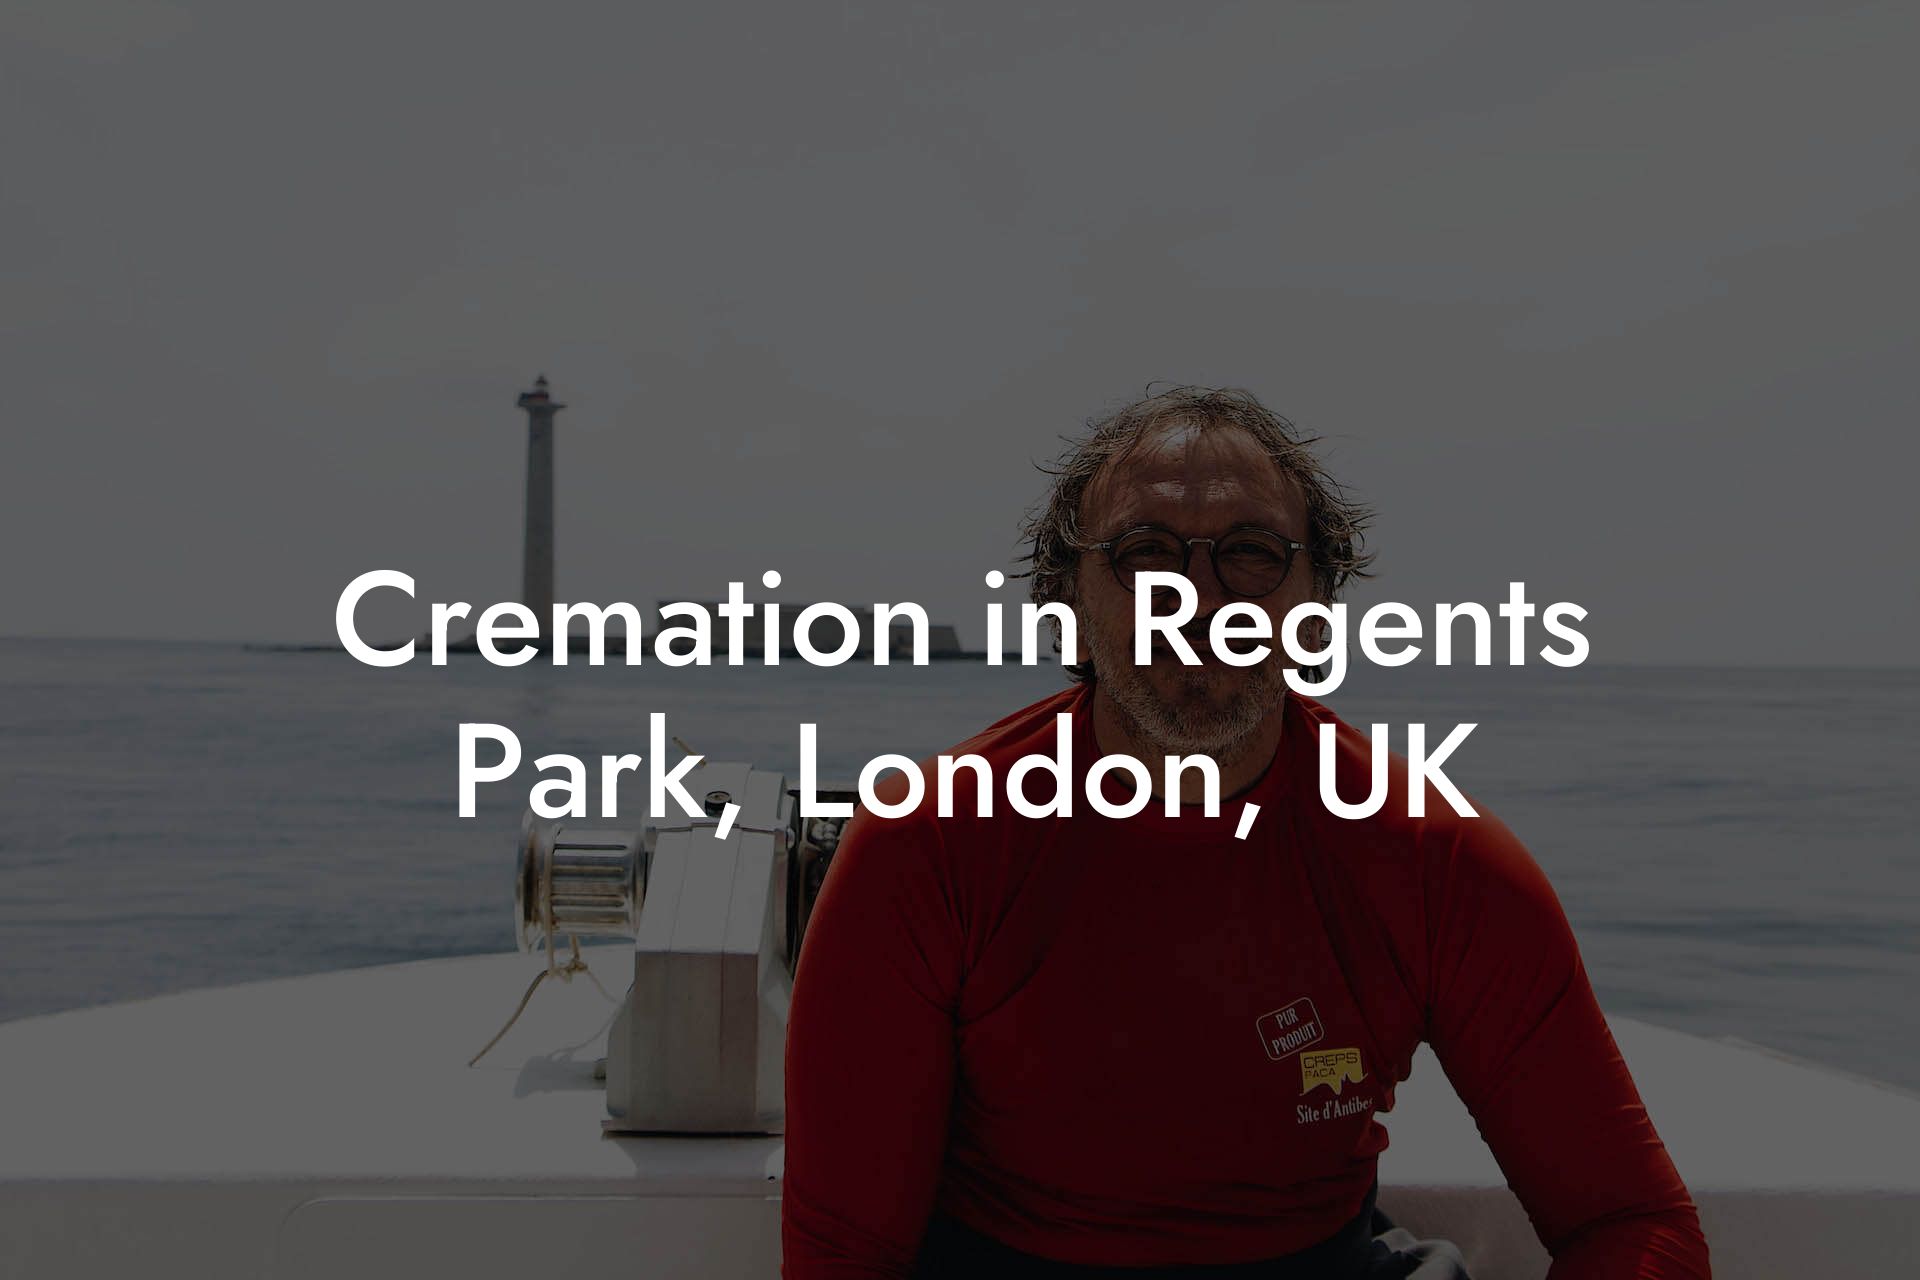 Cremation in Regents Park, London, UK